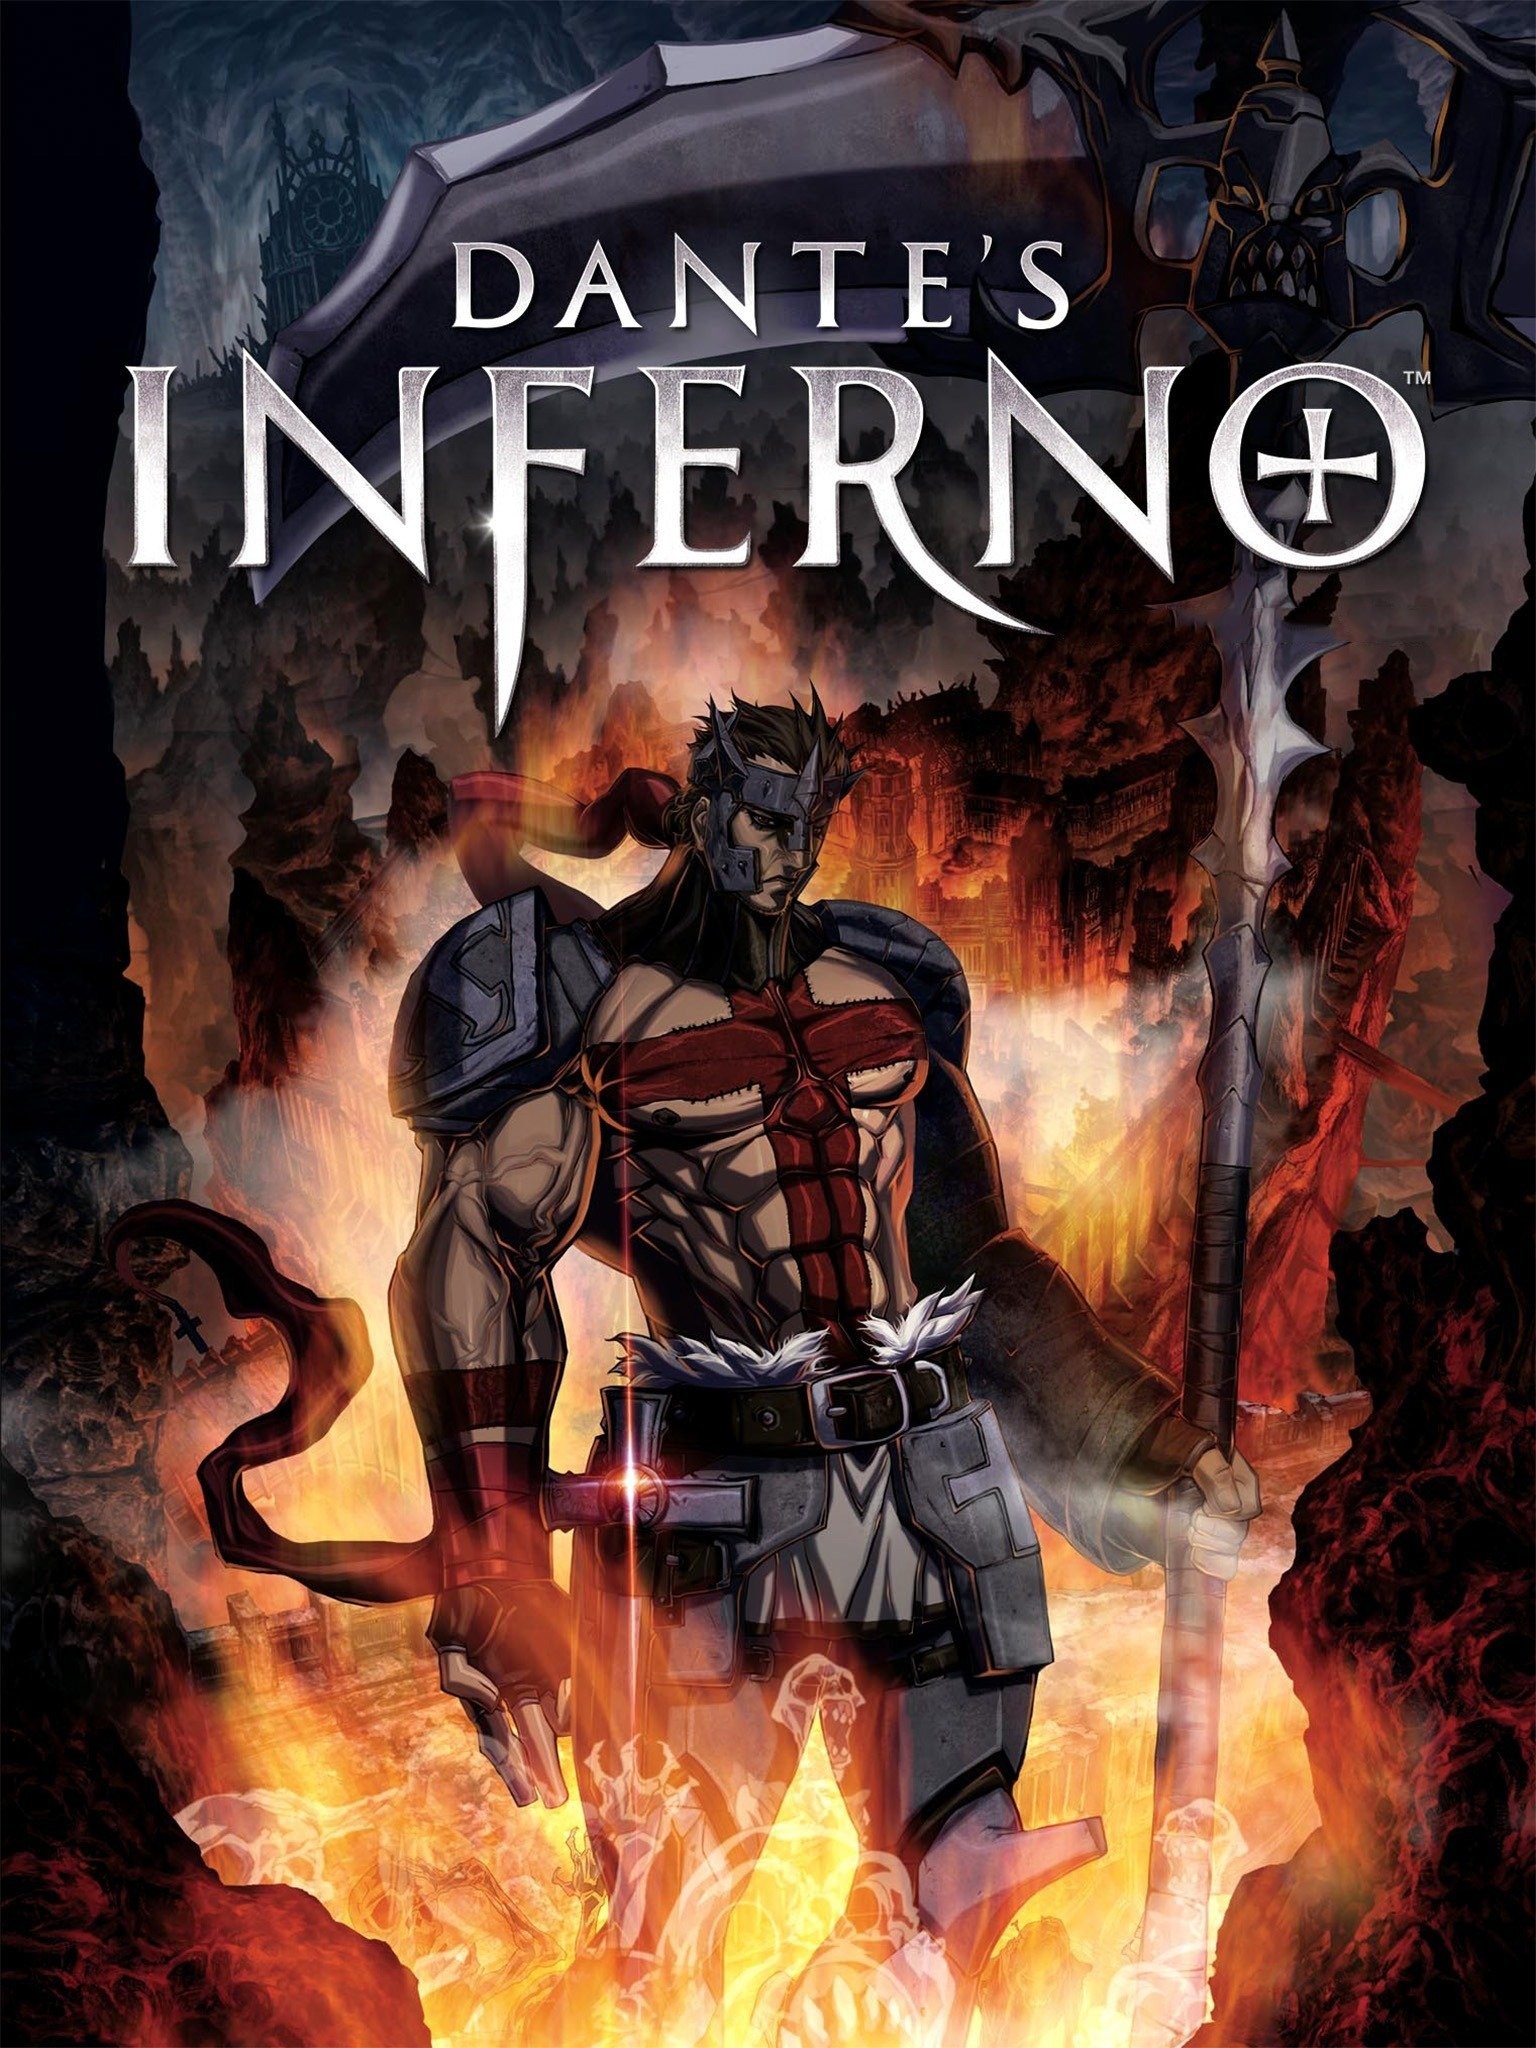 Dante's Inferno trailer 